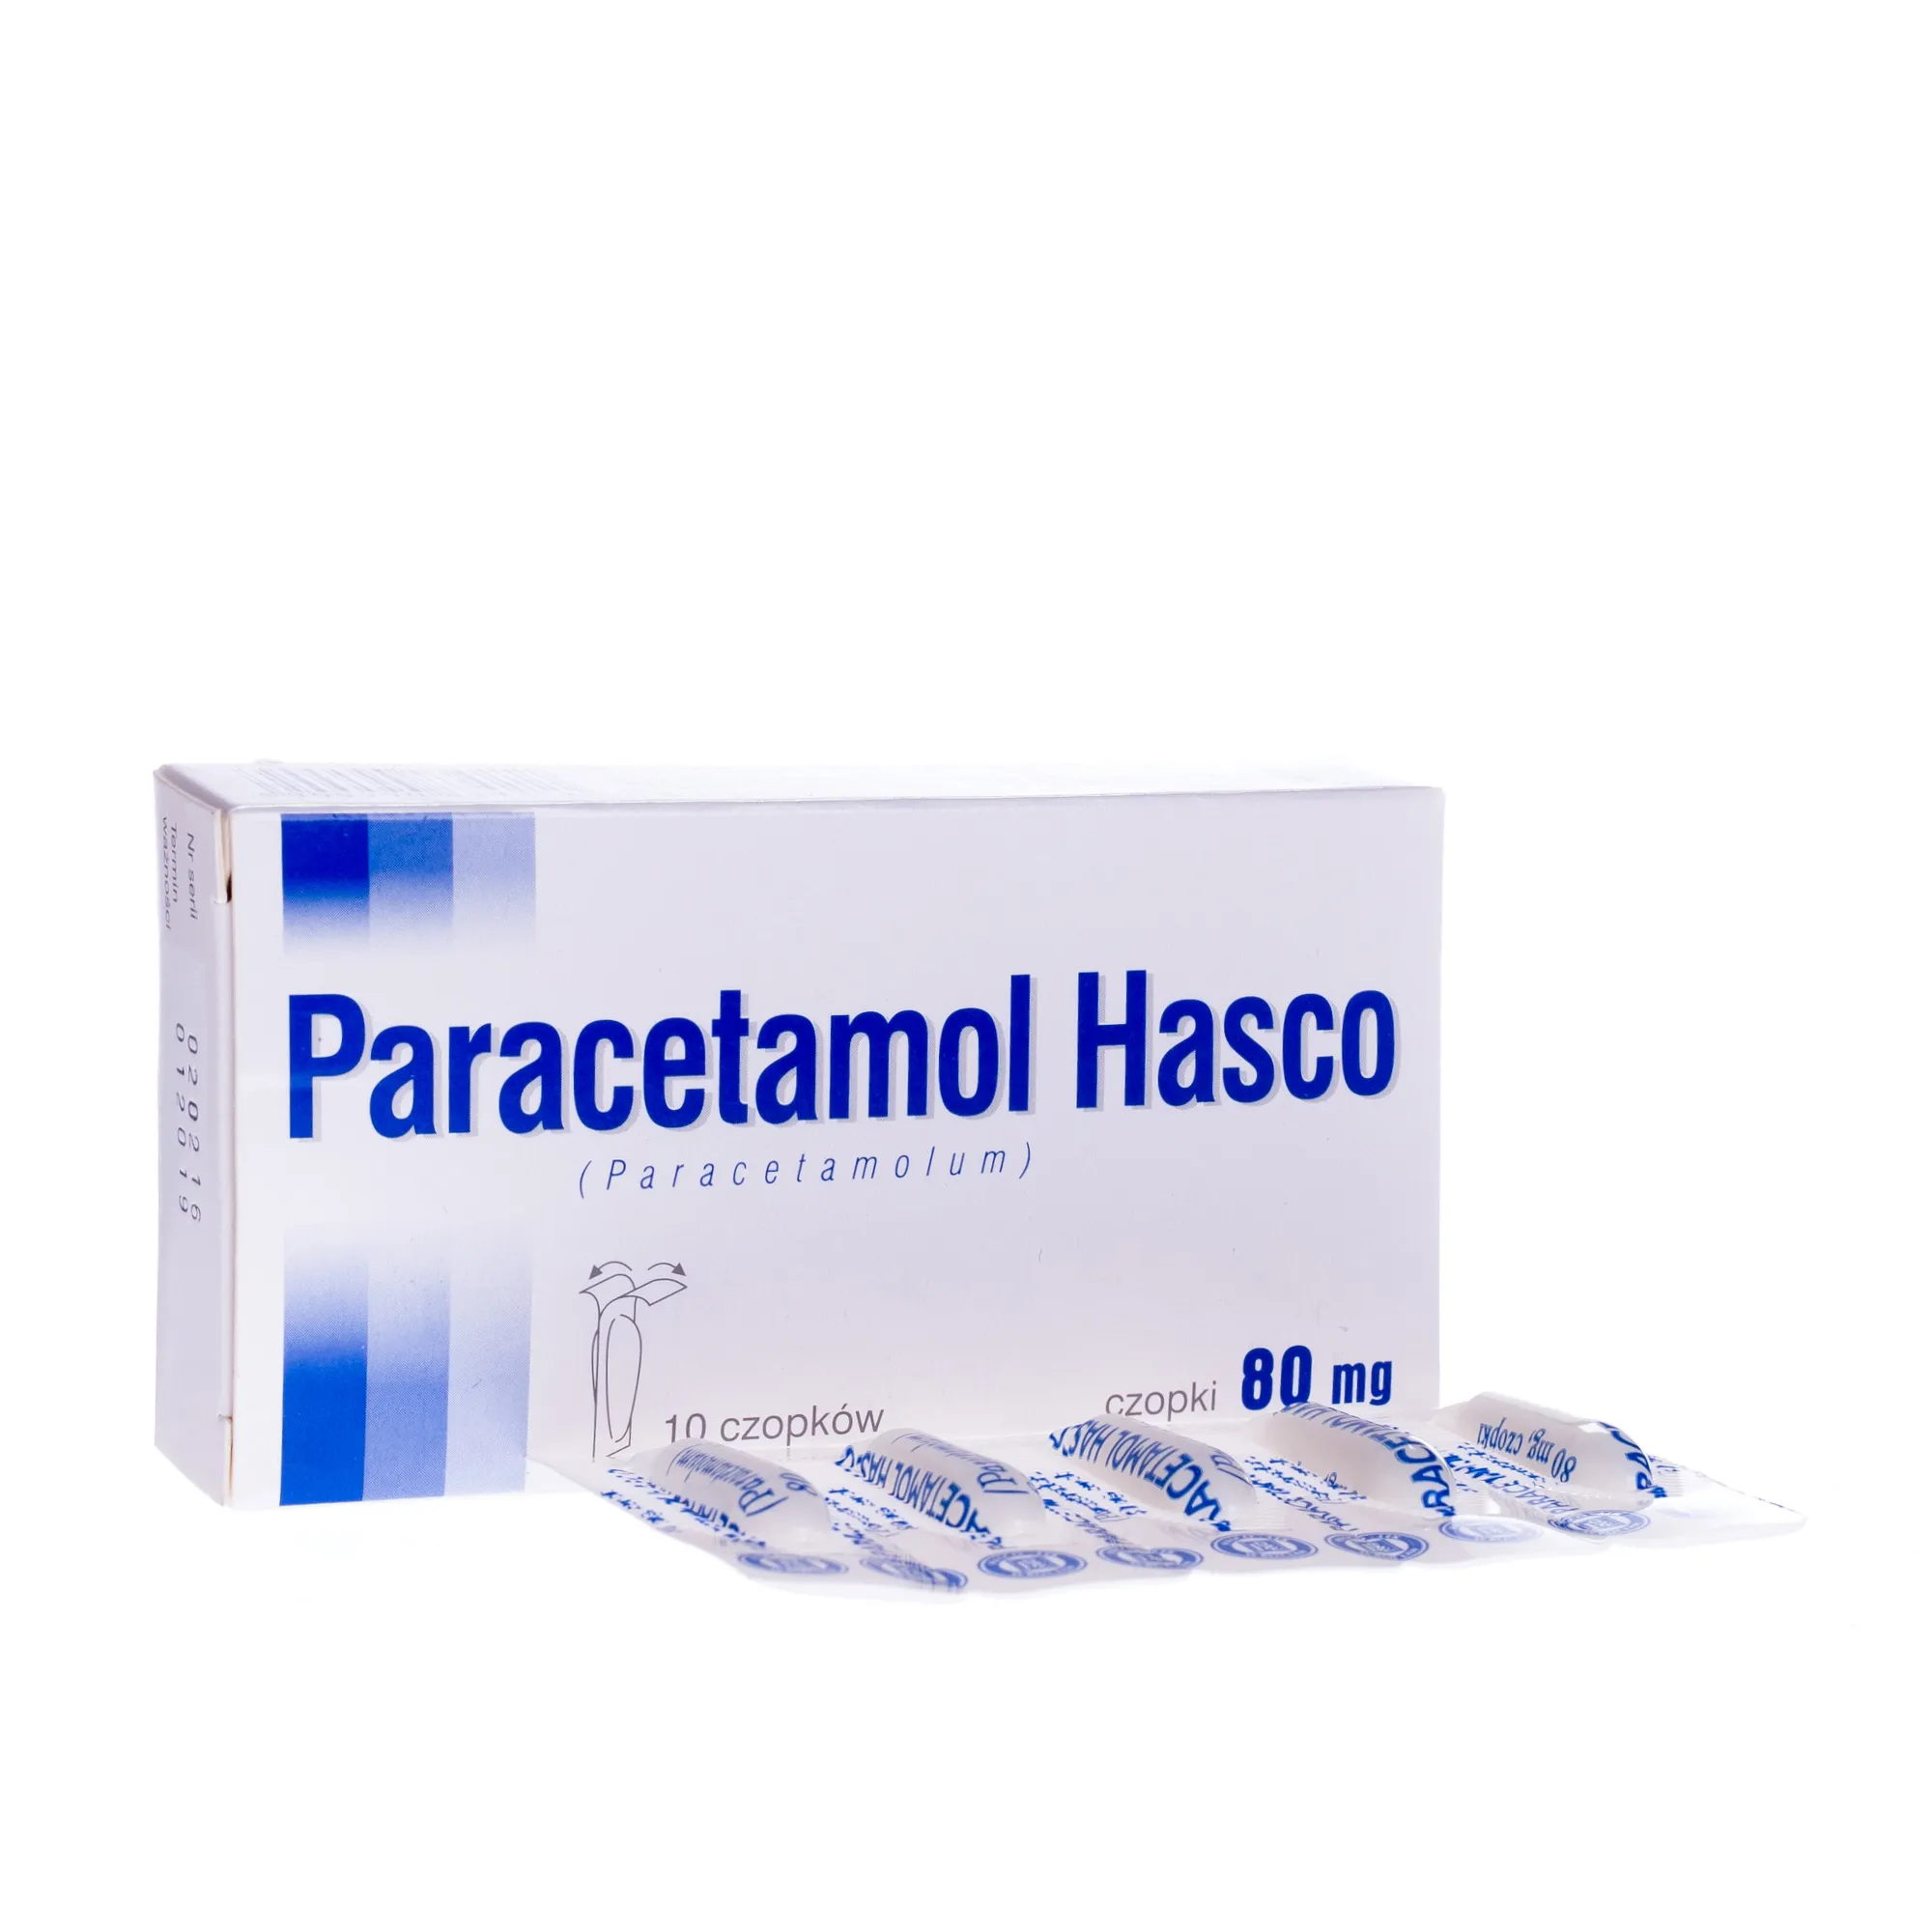 Paracetamol Hasco 80 mg, 10 czopków